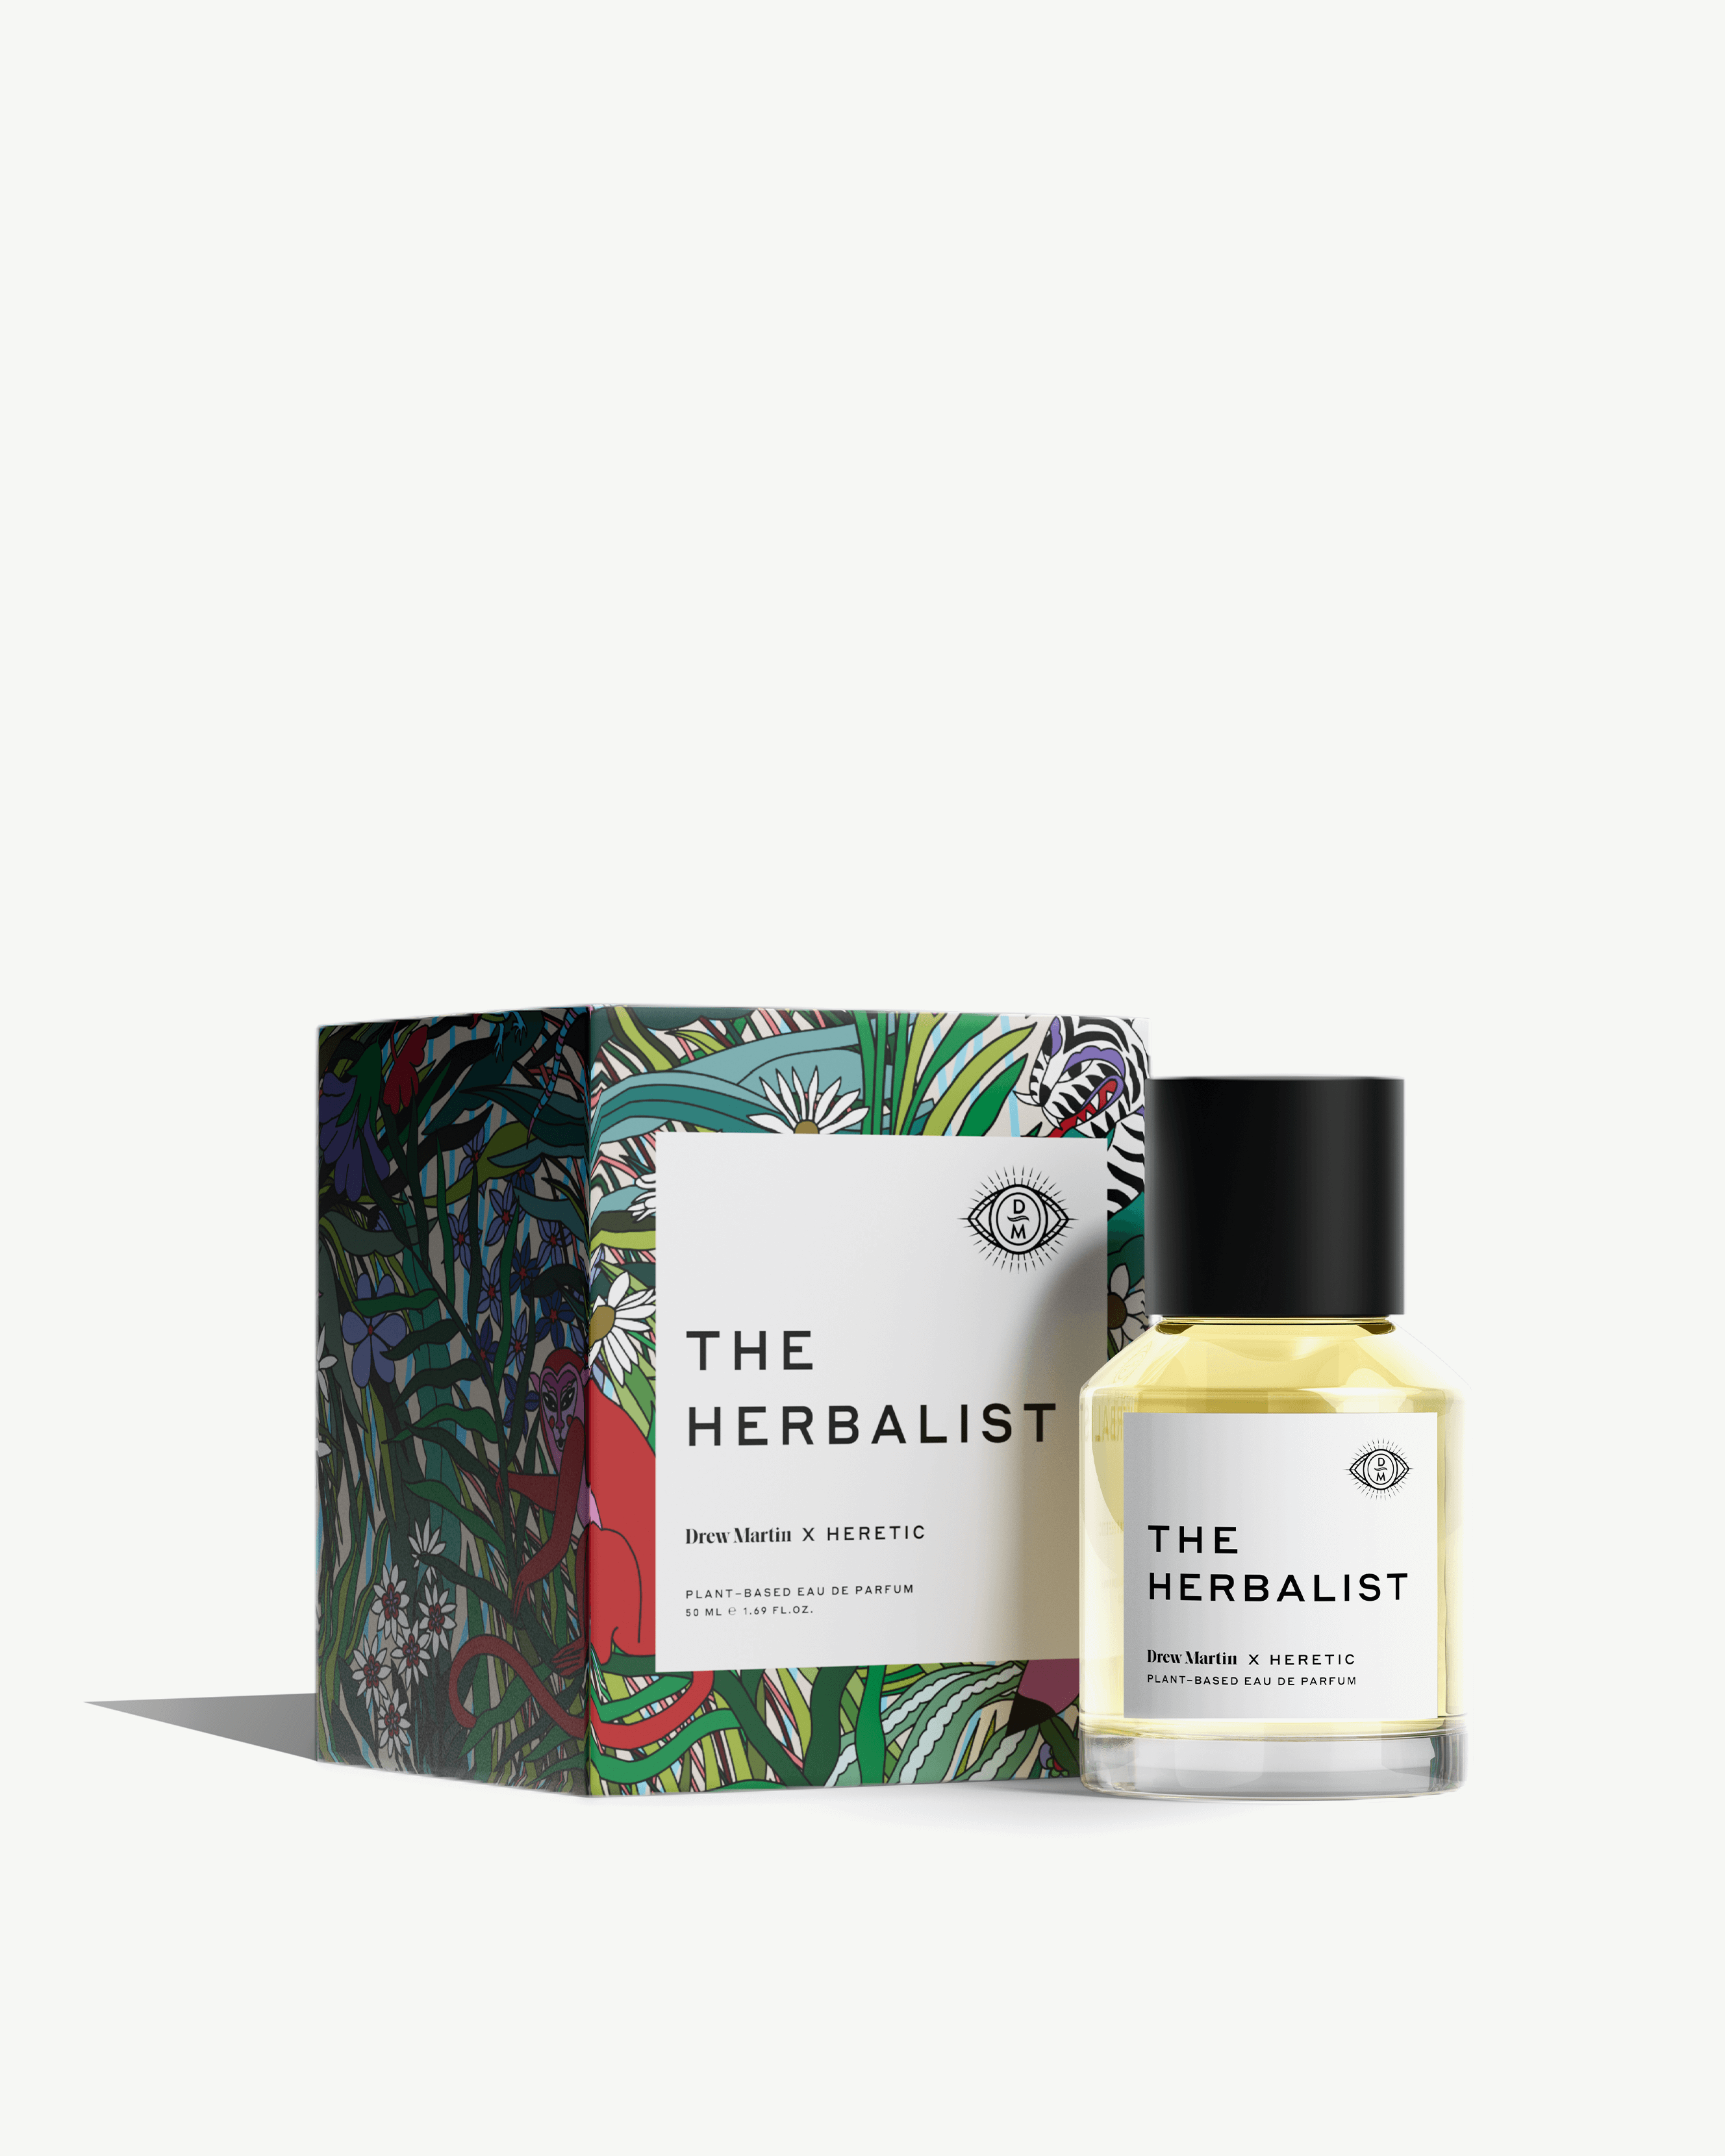 The Herbalist Perfume Oil